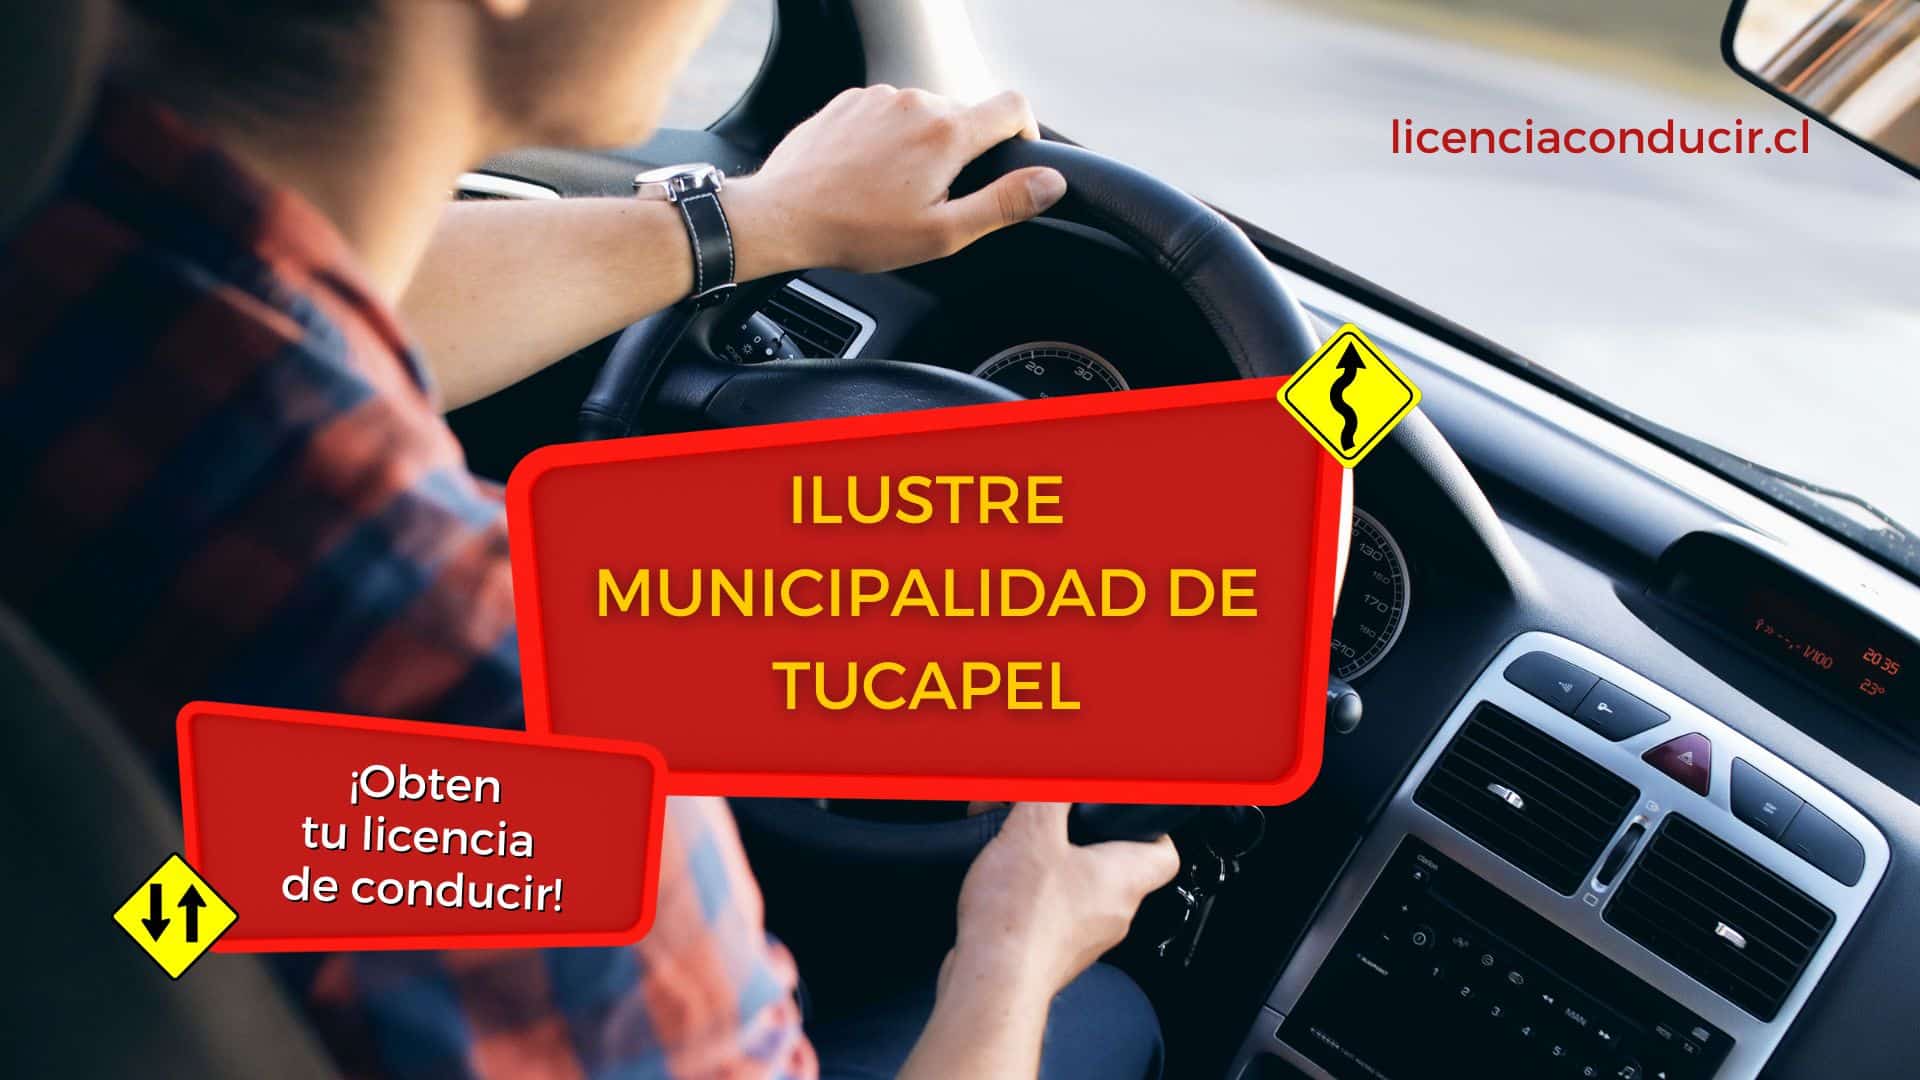 Obtener licencia conducir en tucapel